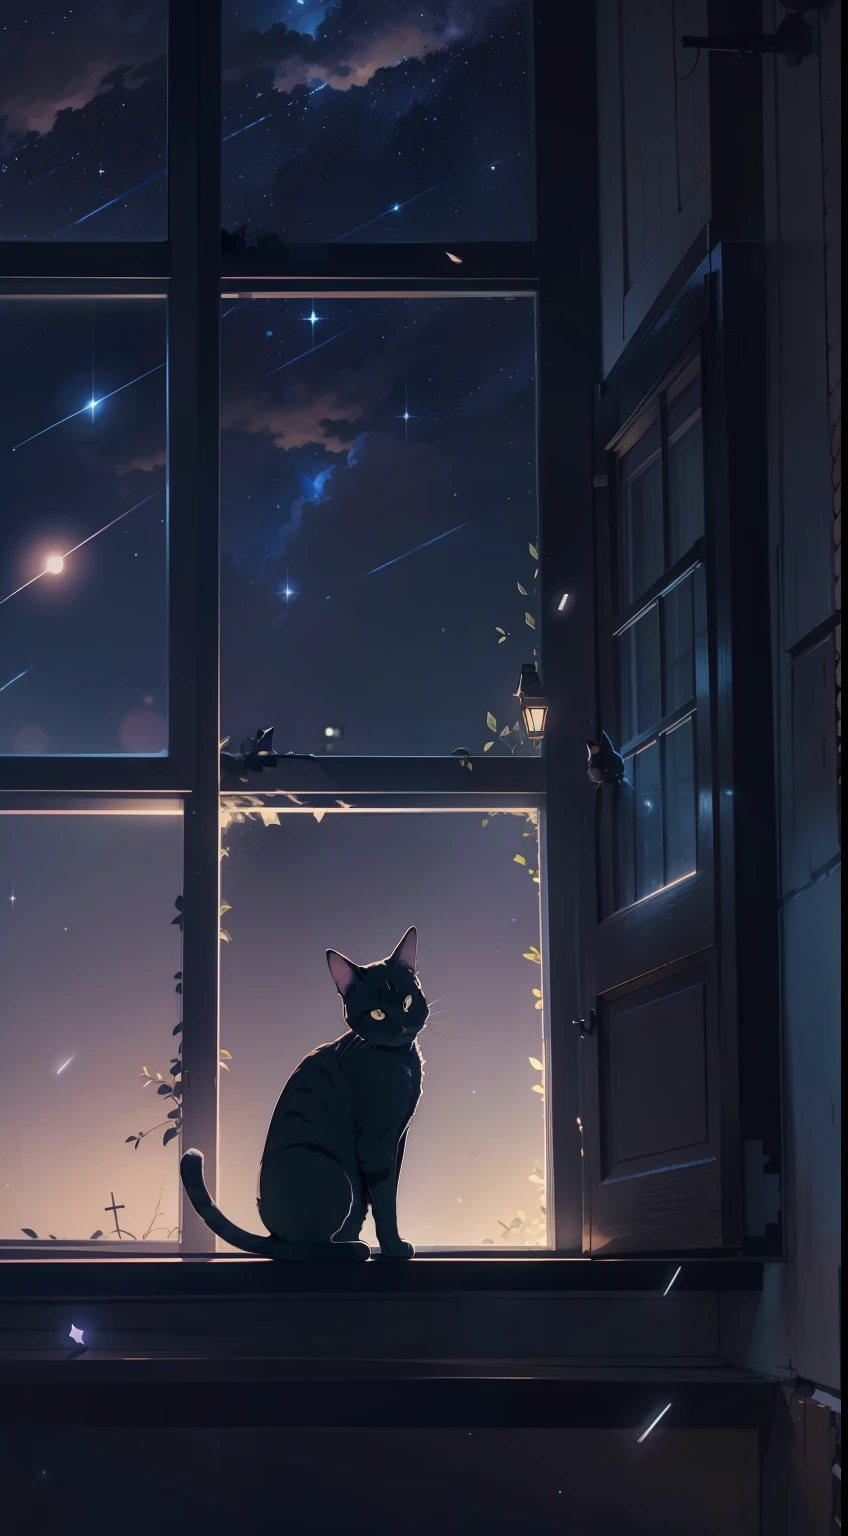 小さな猫が窓辺にうずくまっていました, 流れ星, 夜空, アニメスタイル, 明暗法, 映画照明, バックライト, シルエット, 下から, 8k, 超詳細, 正確な, 最高品質, 細部までこだわった